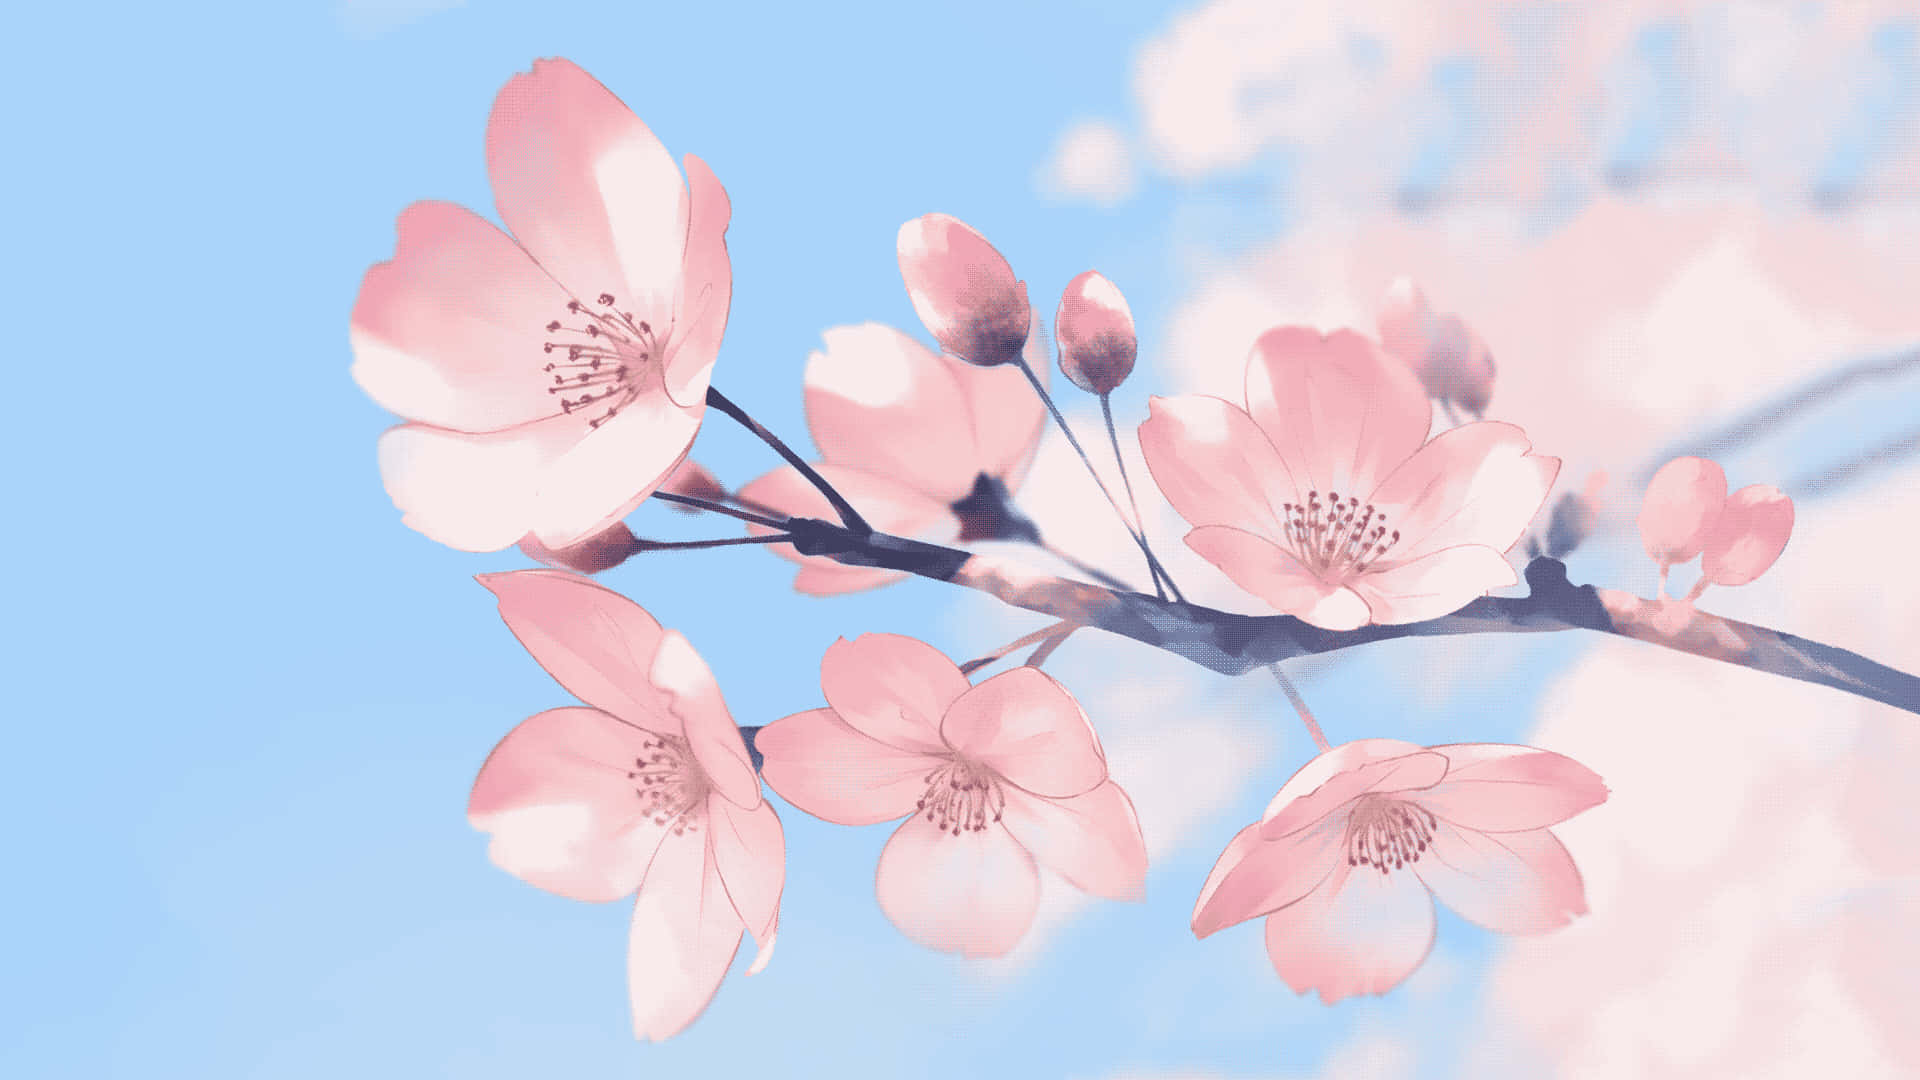 Unarama De Flores Rosas Con Un Cielo Azul Detrás De Ella Fondo de pantalla